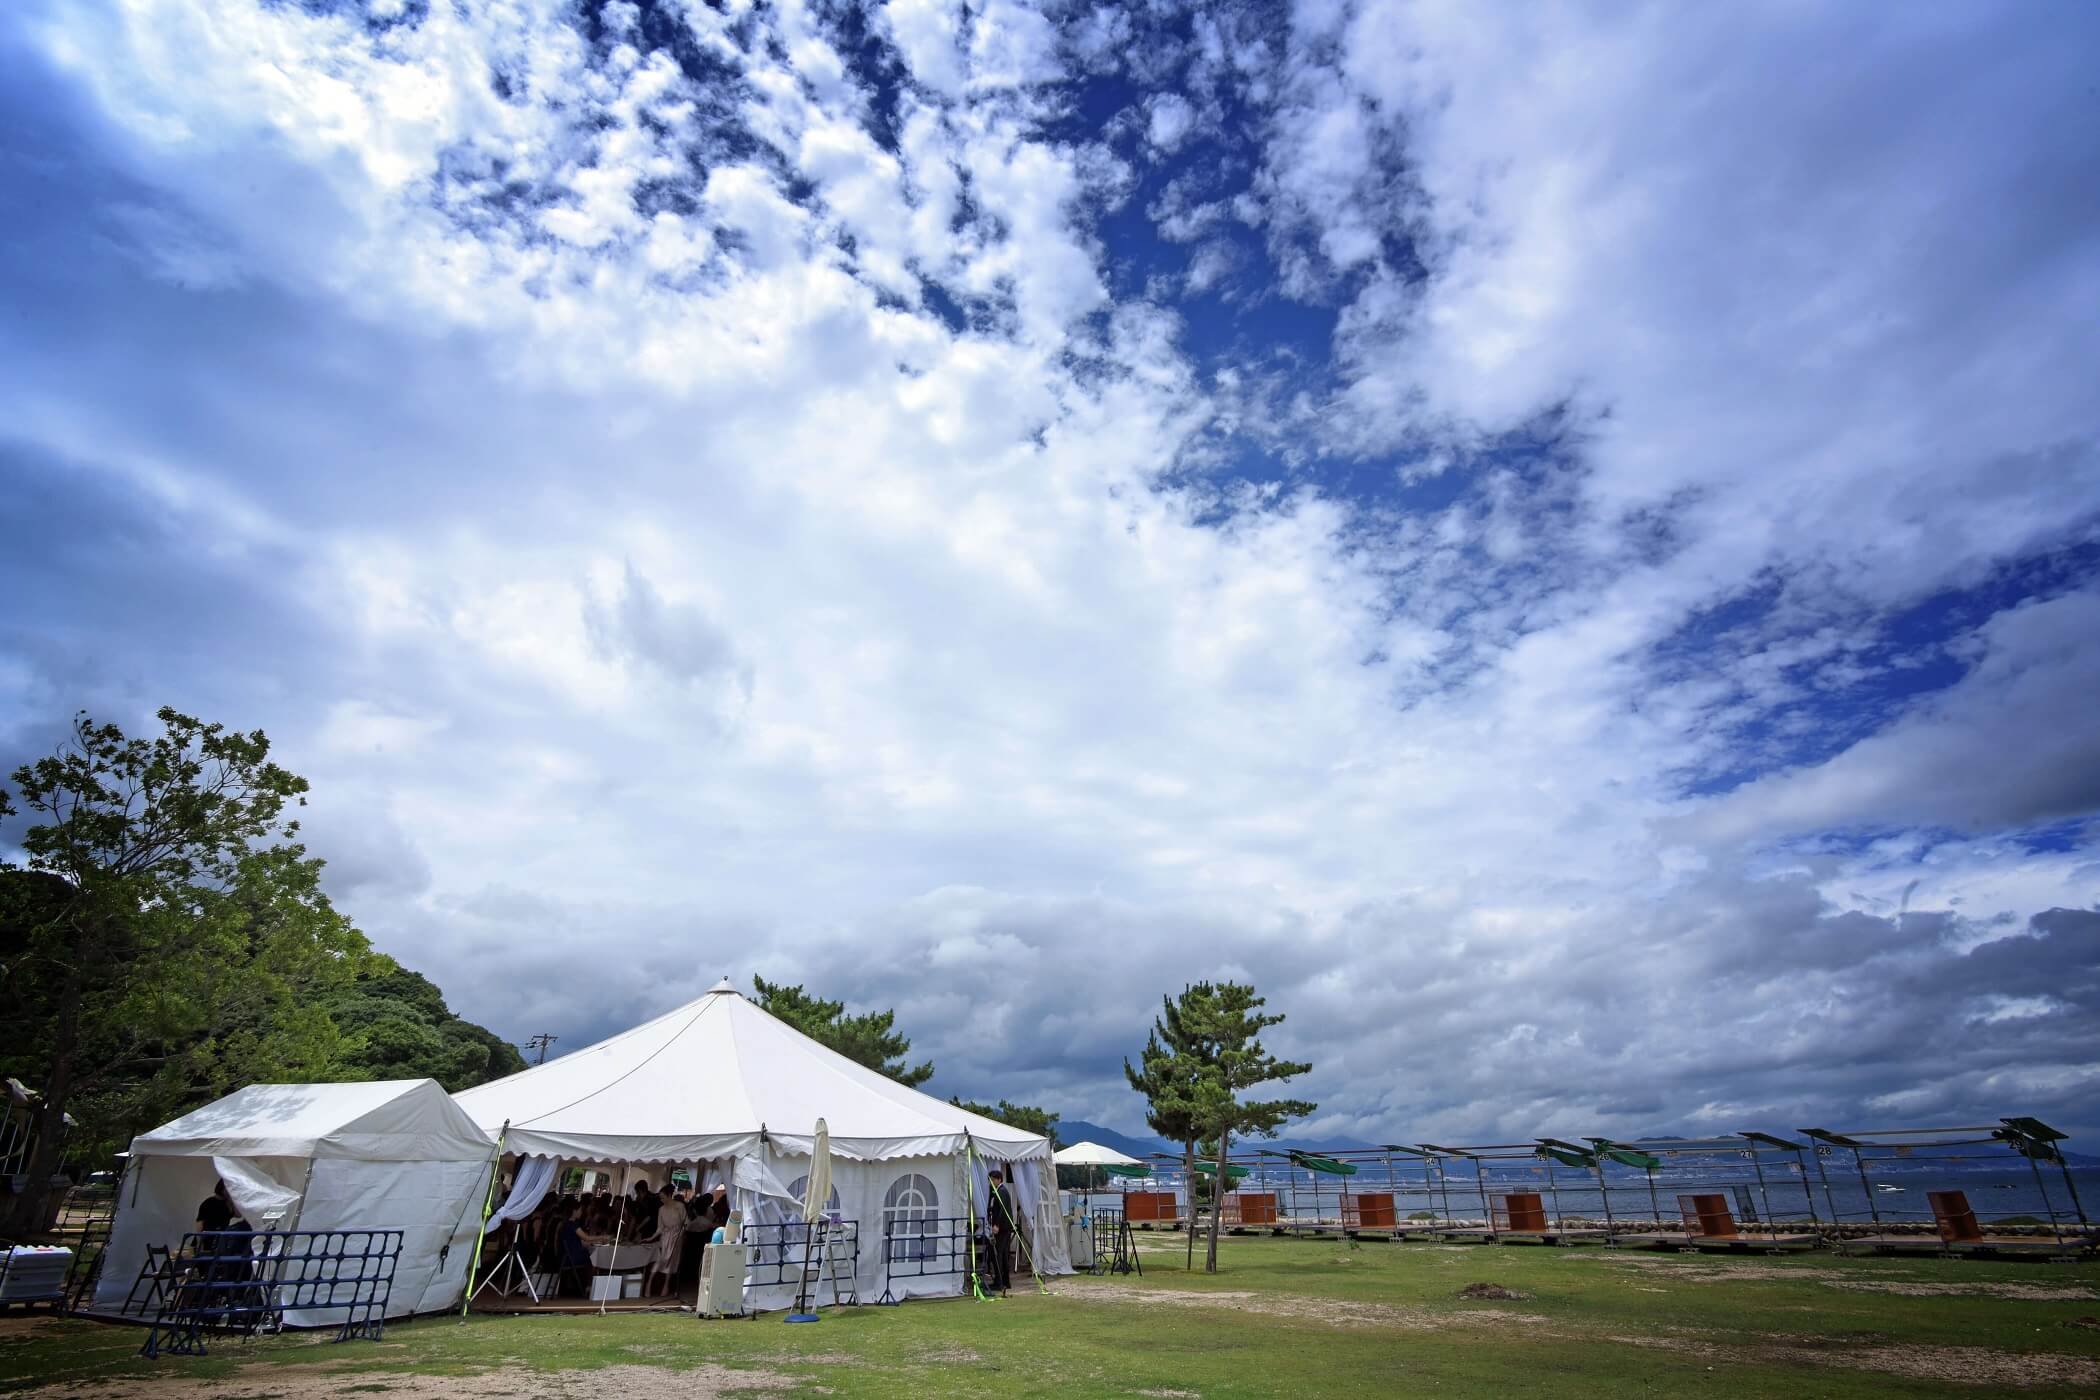 神社からマイクロバスで、島内にある包ヶ浦自然公園に移動。そこには、ふたりの披露宴のためのテントが出現！
たいへん珍しいスタイルのパーティにゲストの期待も最高潮に。
